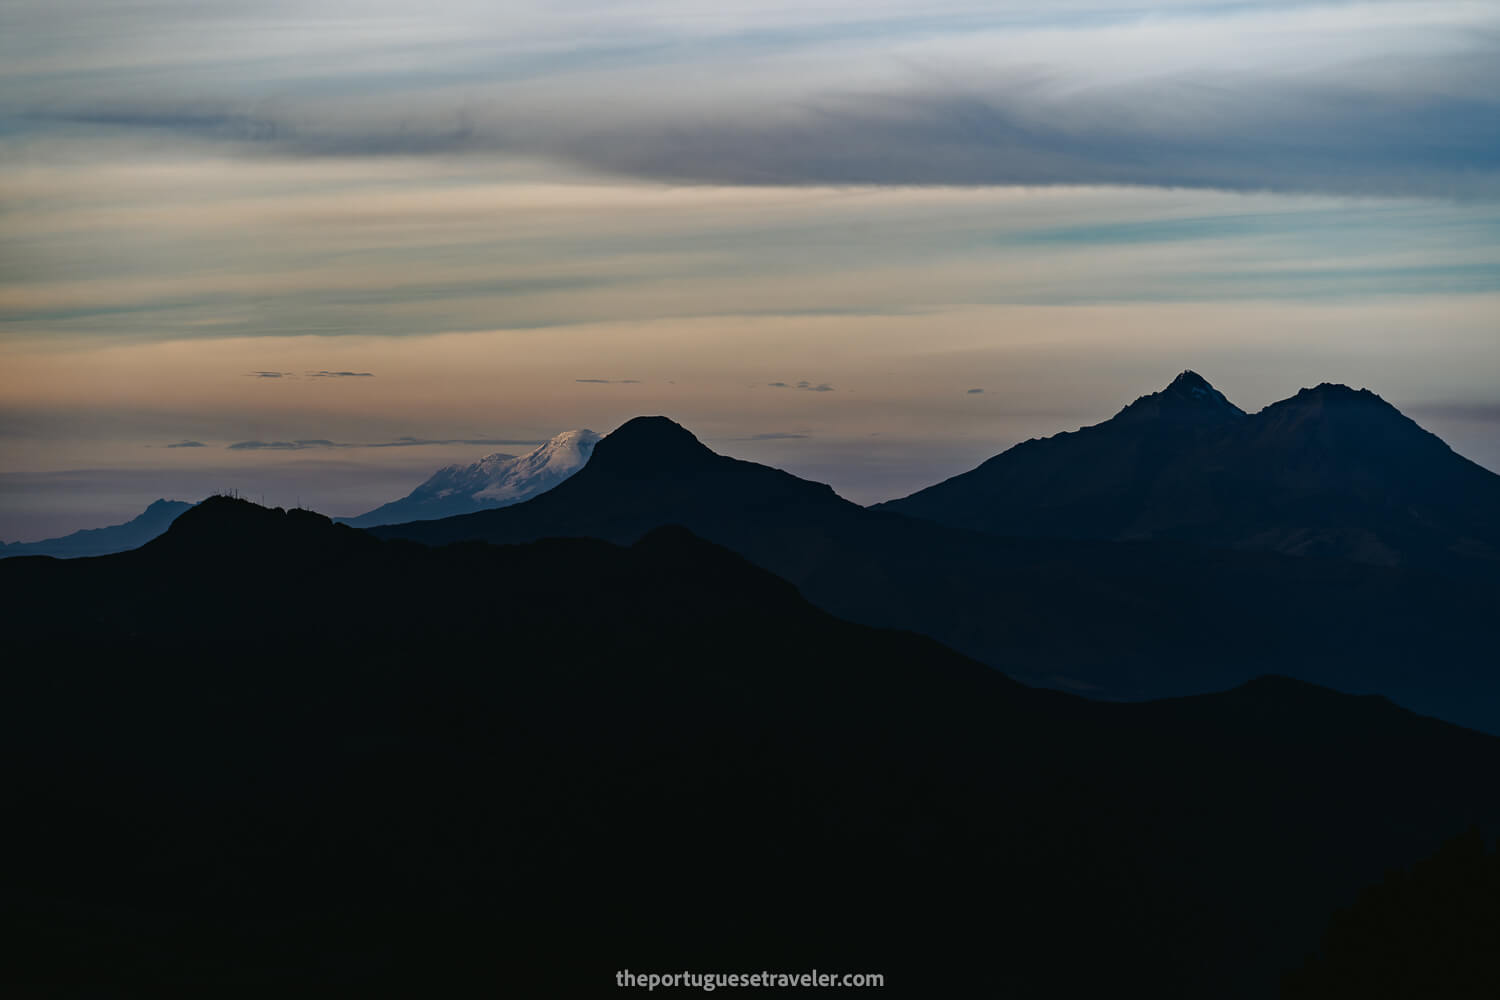 The Chimborazo and the Ilinizas Volcanoes